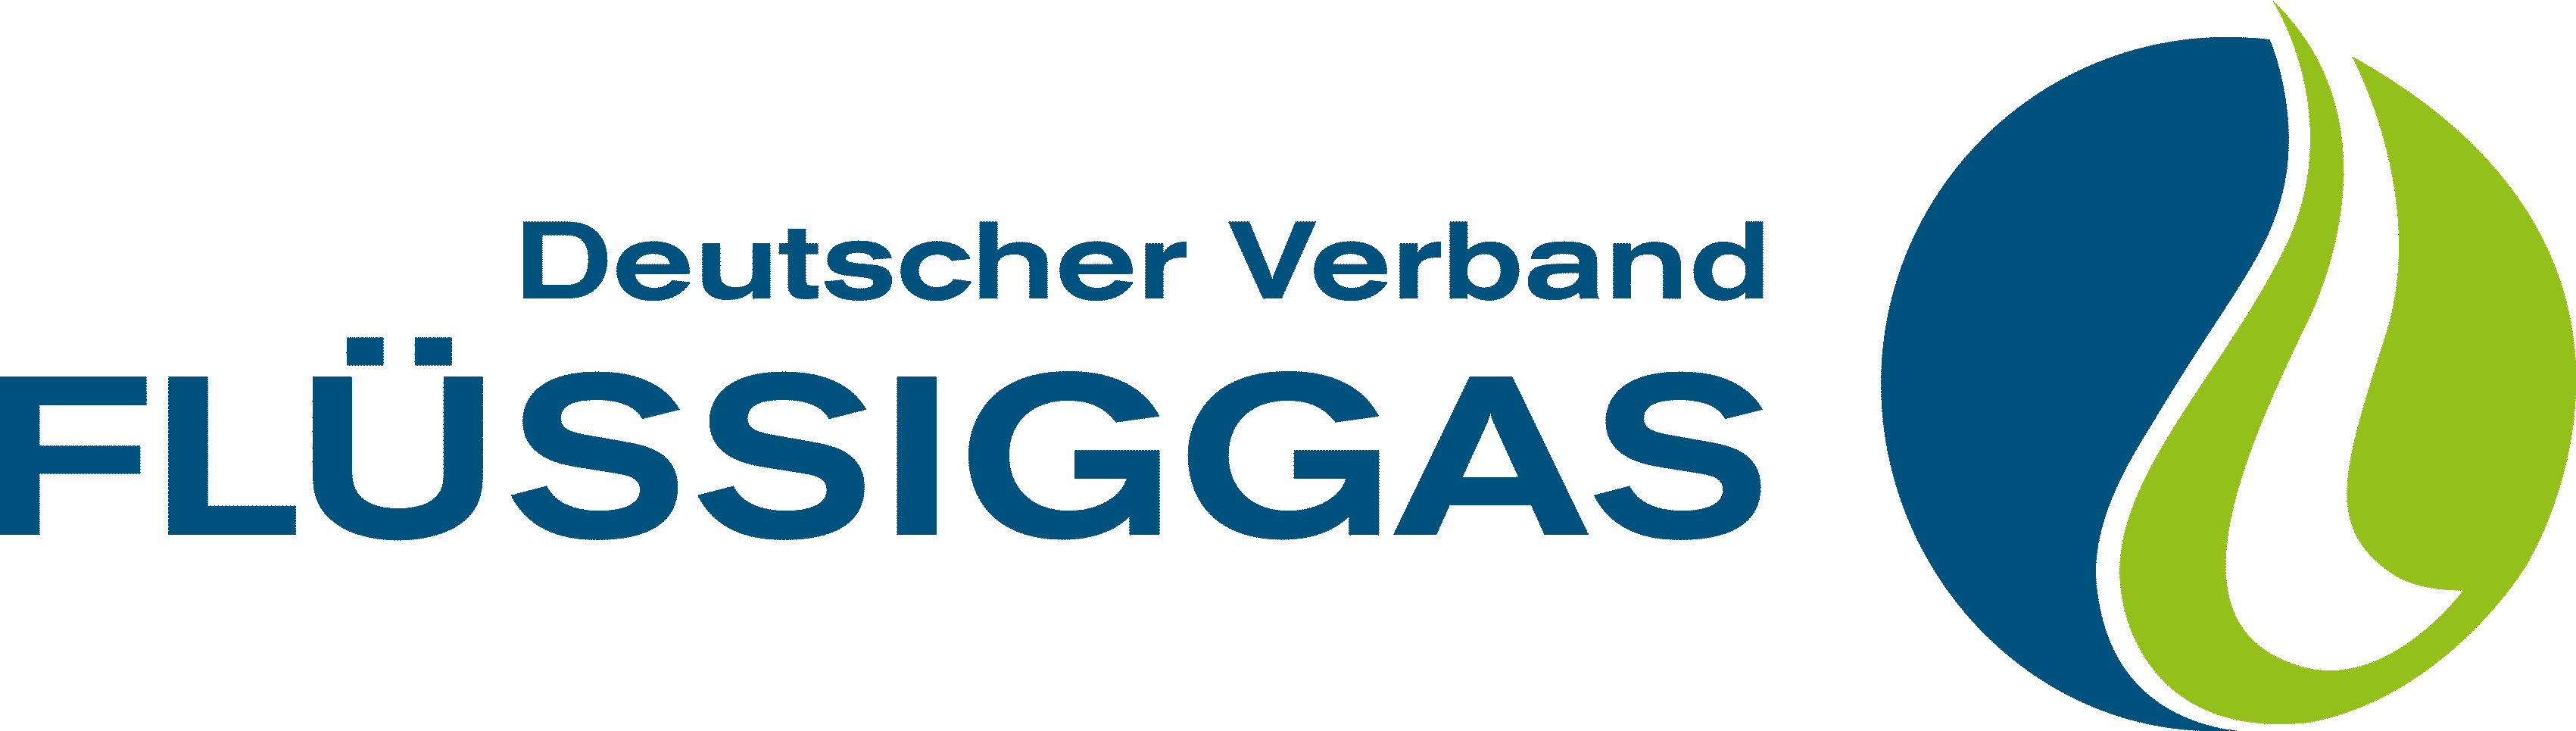 DVFG-Logo